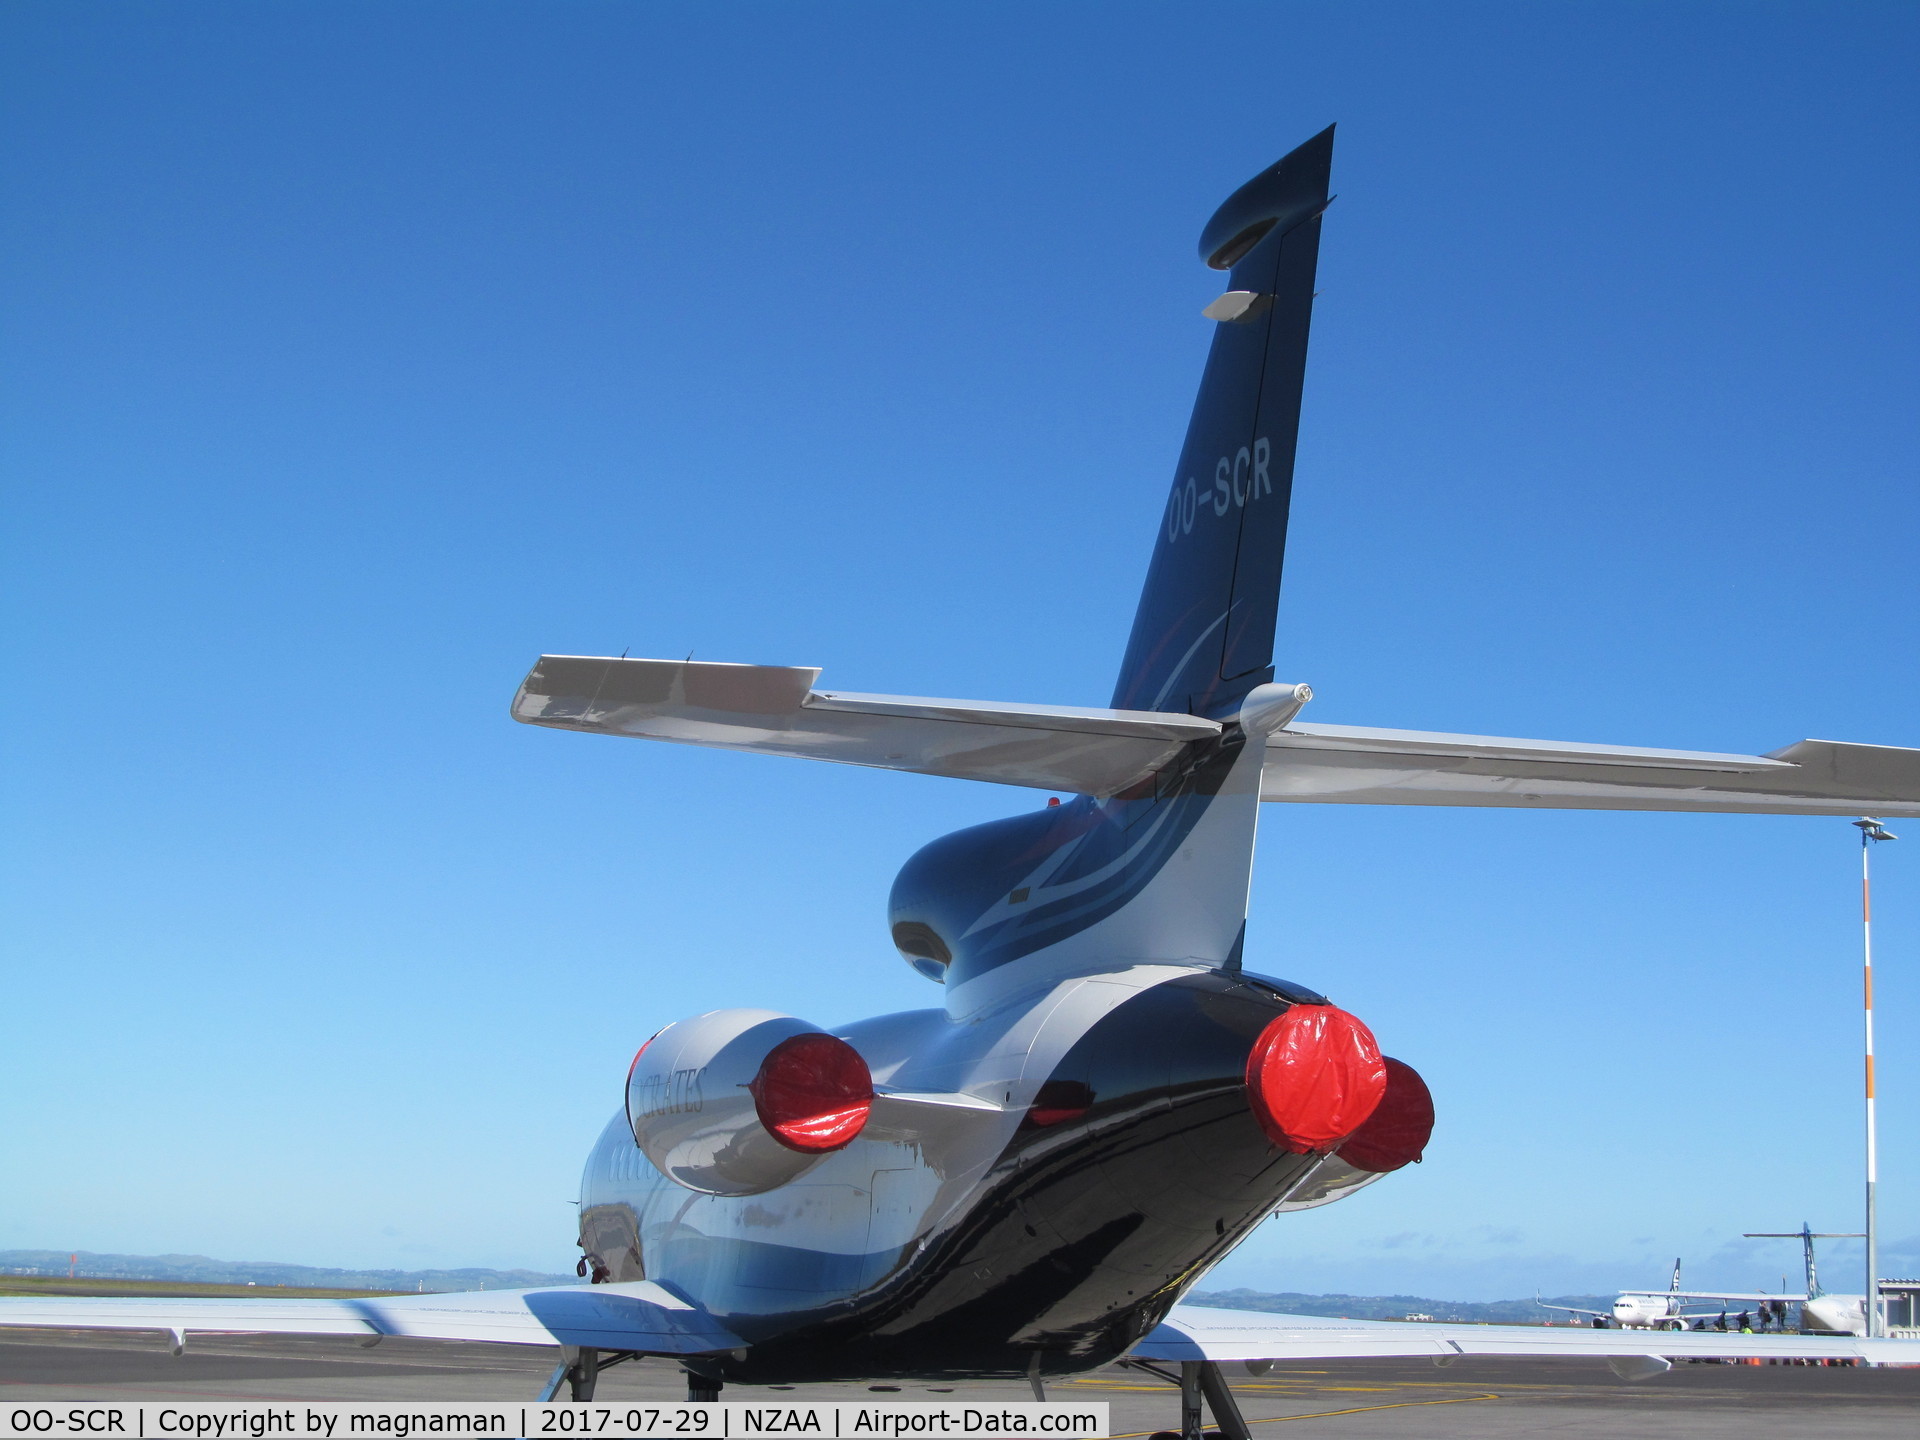 OO-SCR, 2004 Dassault Falcon 900EX C/N 130, rear ended